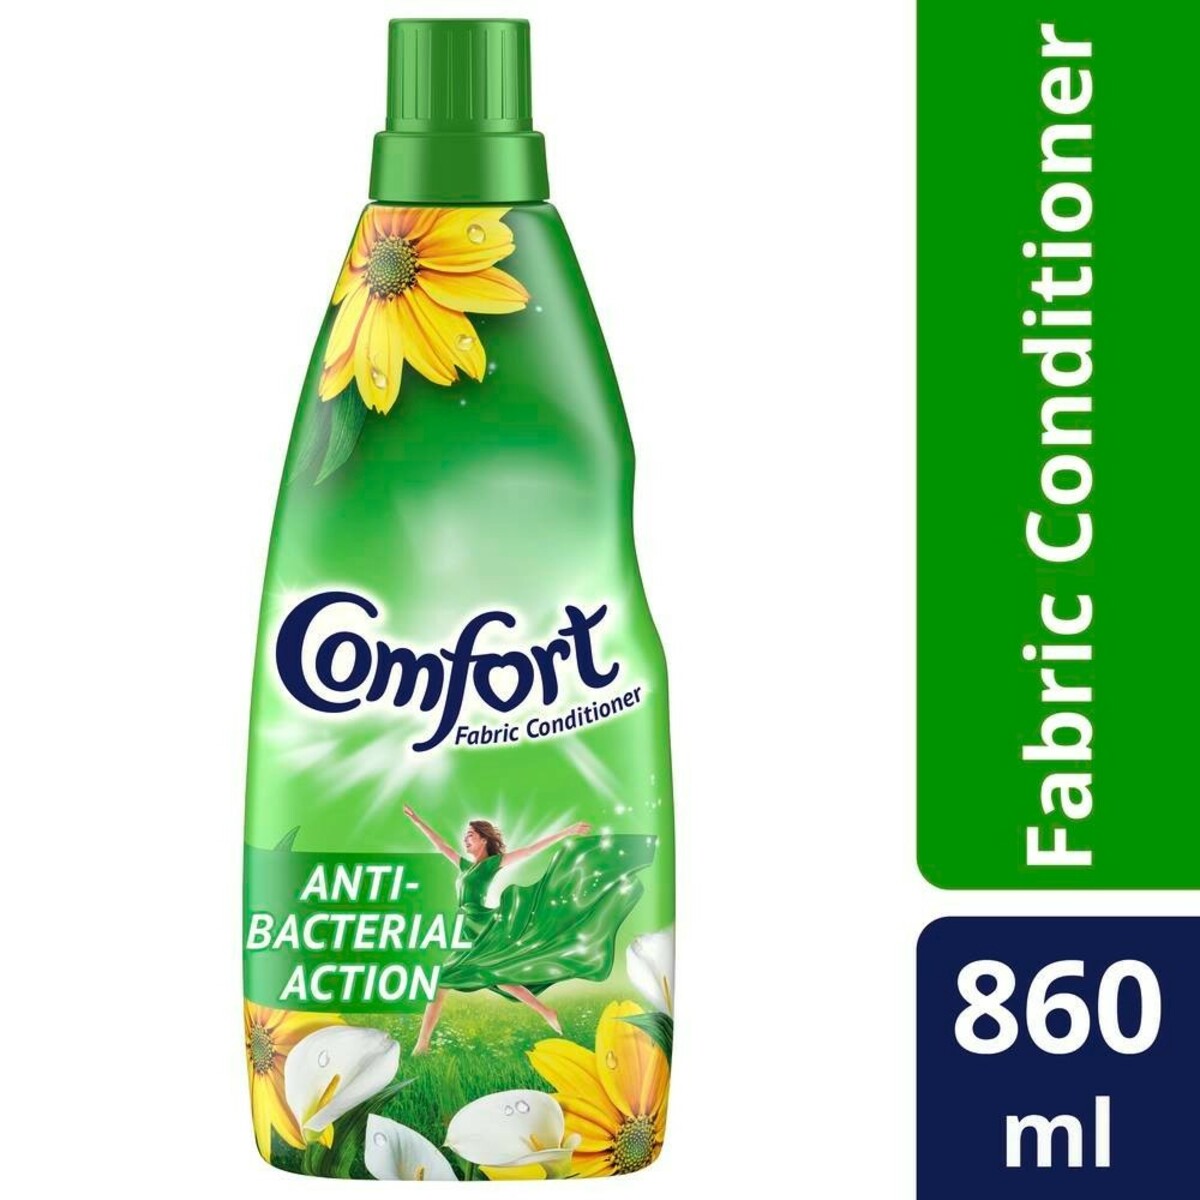 Buy Comfort Fabric Conditioner Green 860ml Online - Hypermarket India